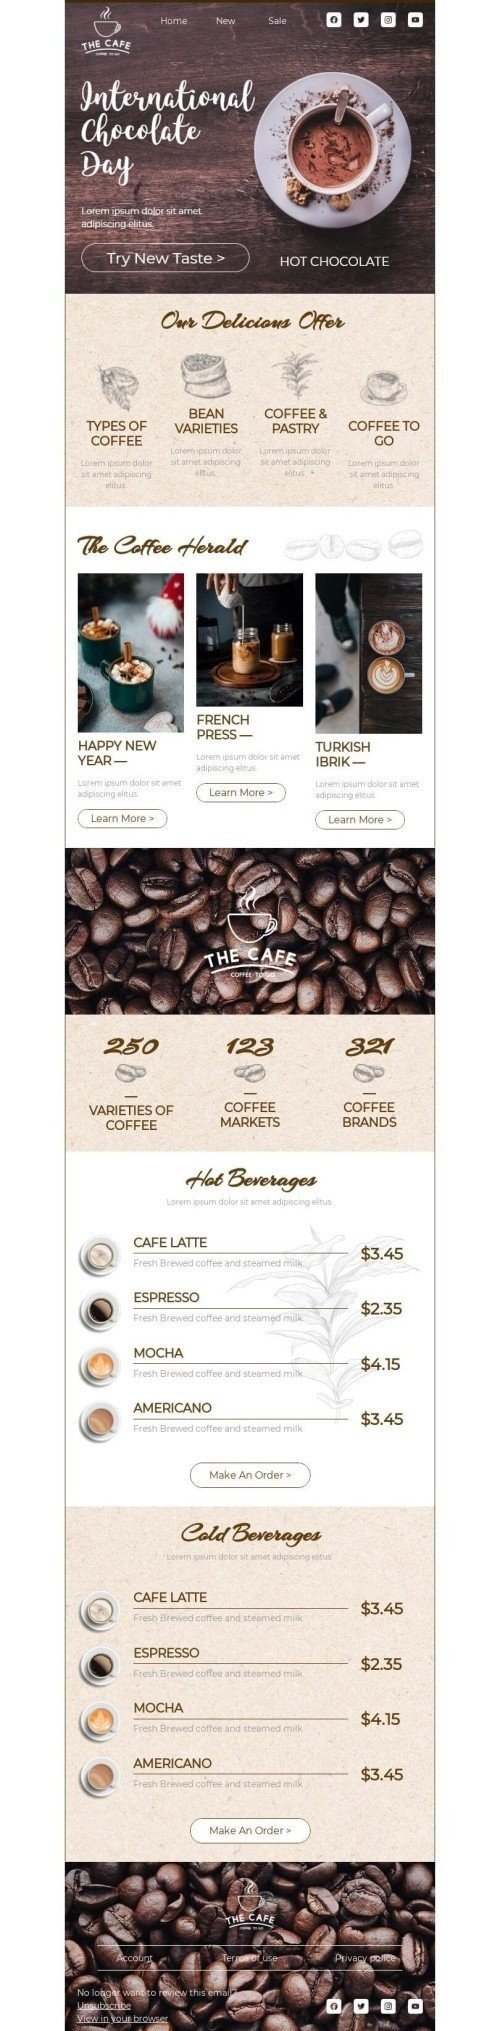 Der internationale Tag der Schokolade E-Mail-Vorlage «Probieren Sie einen neuen Geschmack» für Getränke-Branche Ansicht auf Mobilgeräten